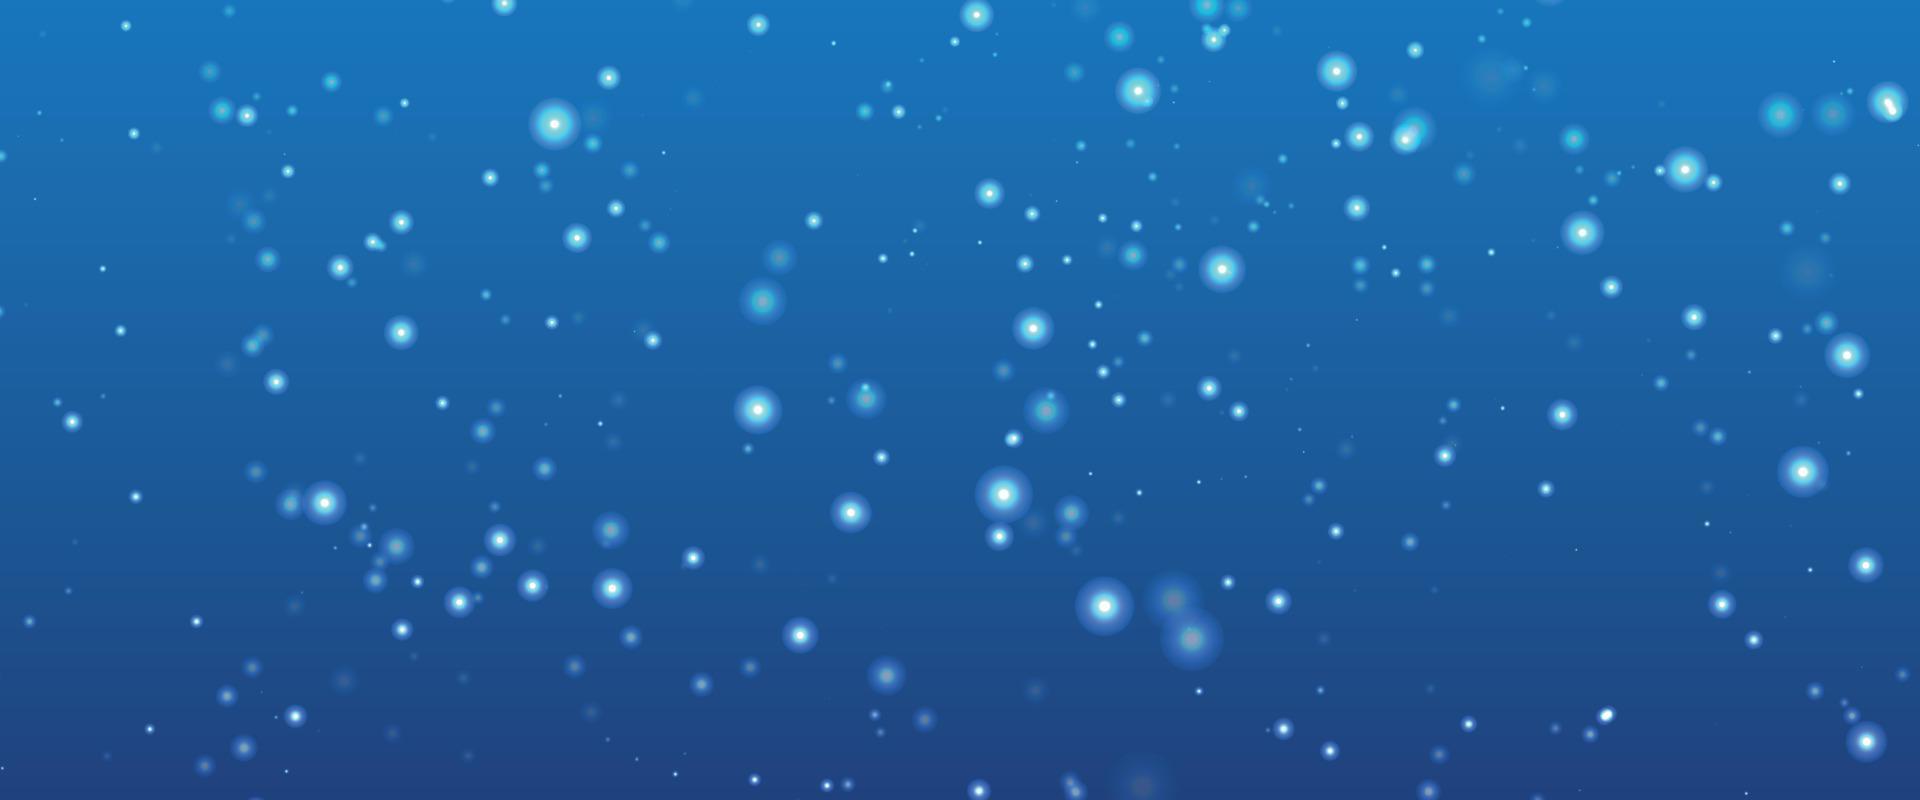 fond coloré neige floue. fond bokeh avec flocon de neige. flocons de neige scintillants d'hiver tourbillonnant fond bokeh, toile de fond avec des étoiles bleues étincelantes. saison d'hiver de flocon de neige. vecteur